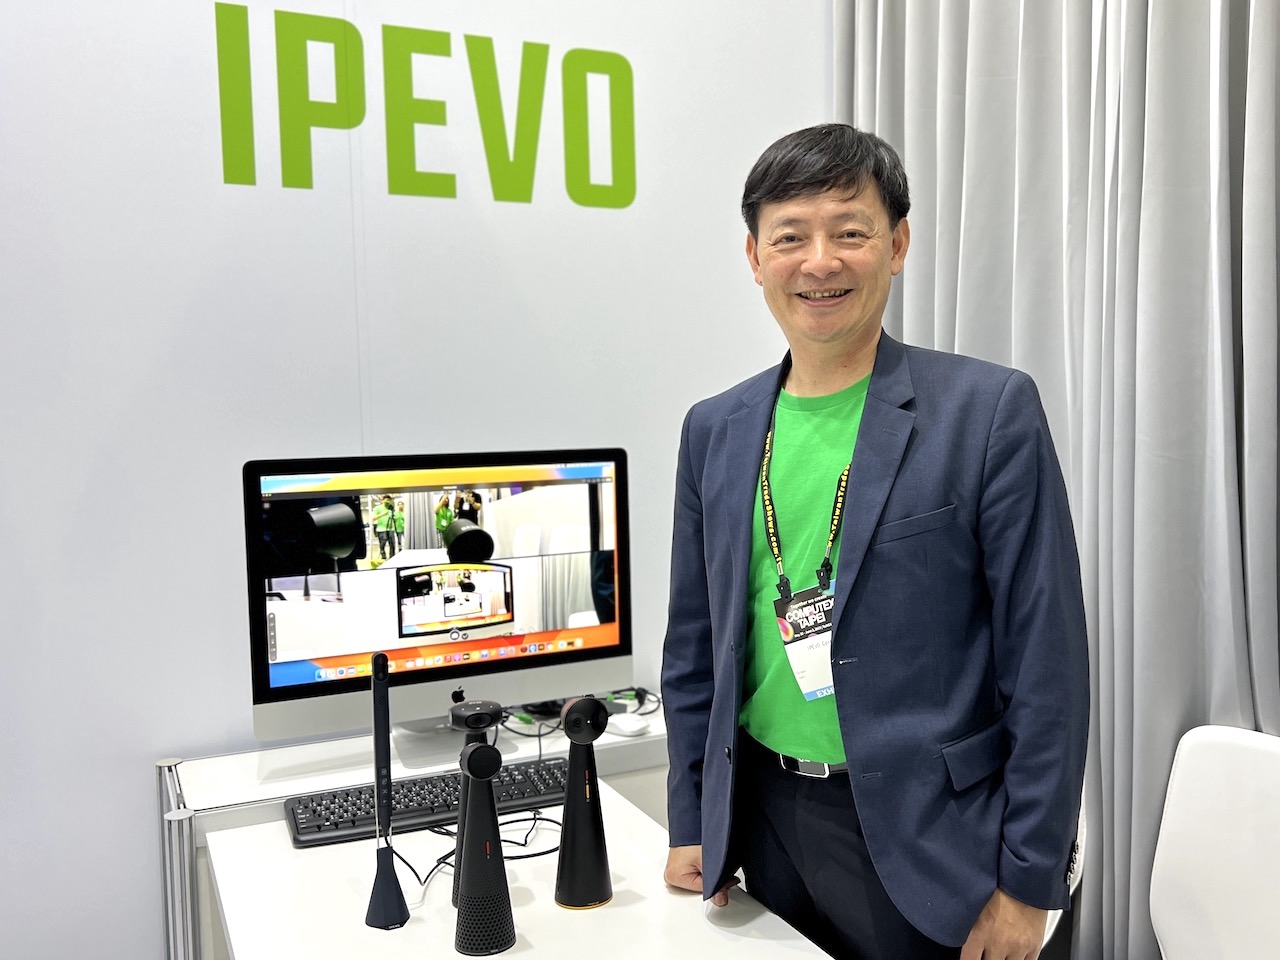 【有影】首度進軍COMPUTEX  IPEVO年度新品提供視訊溝通新體驗